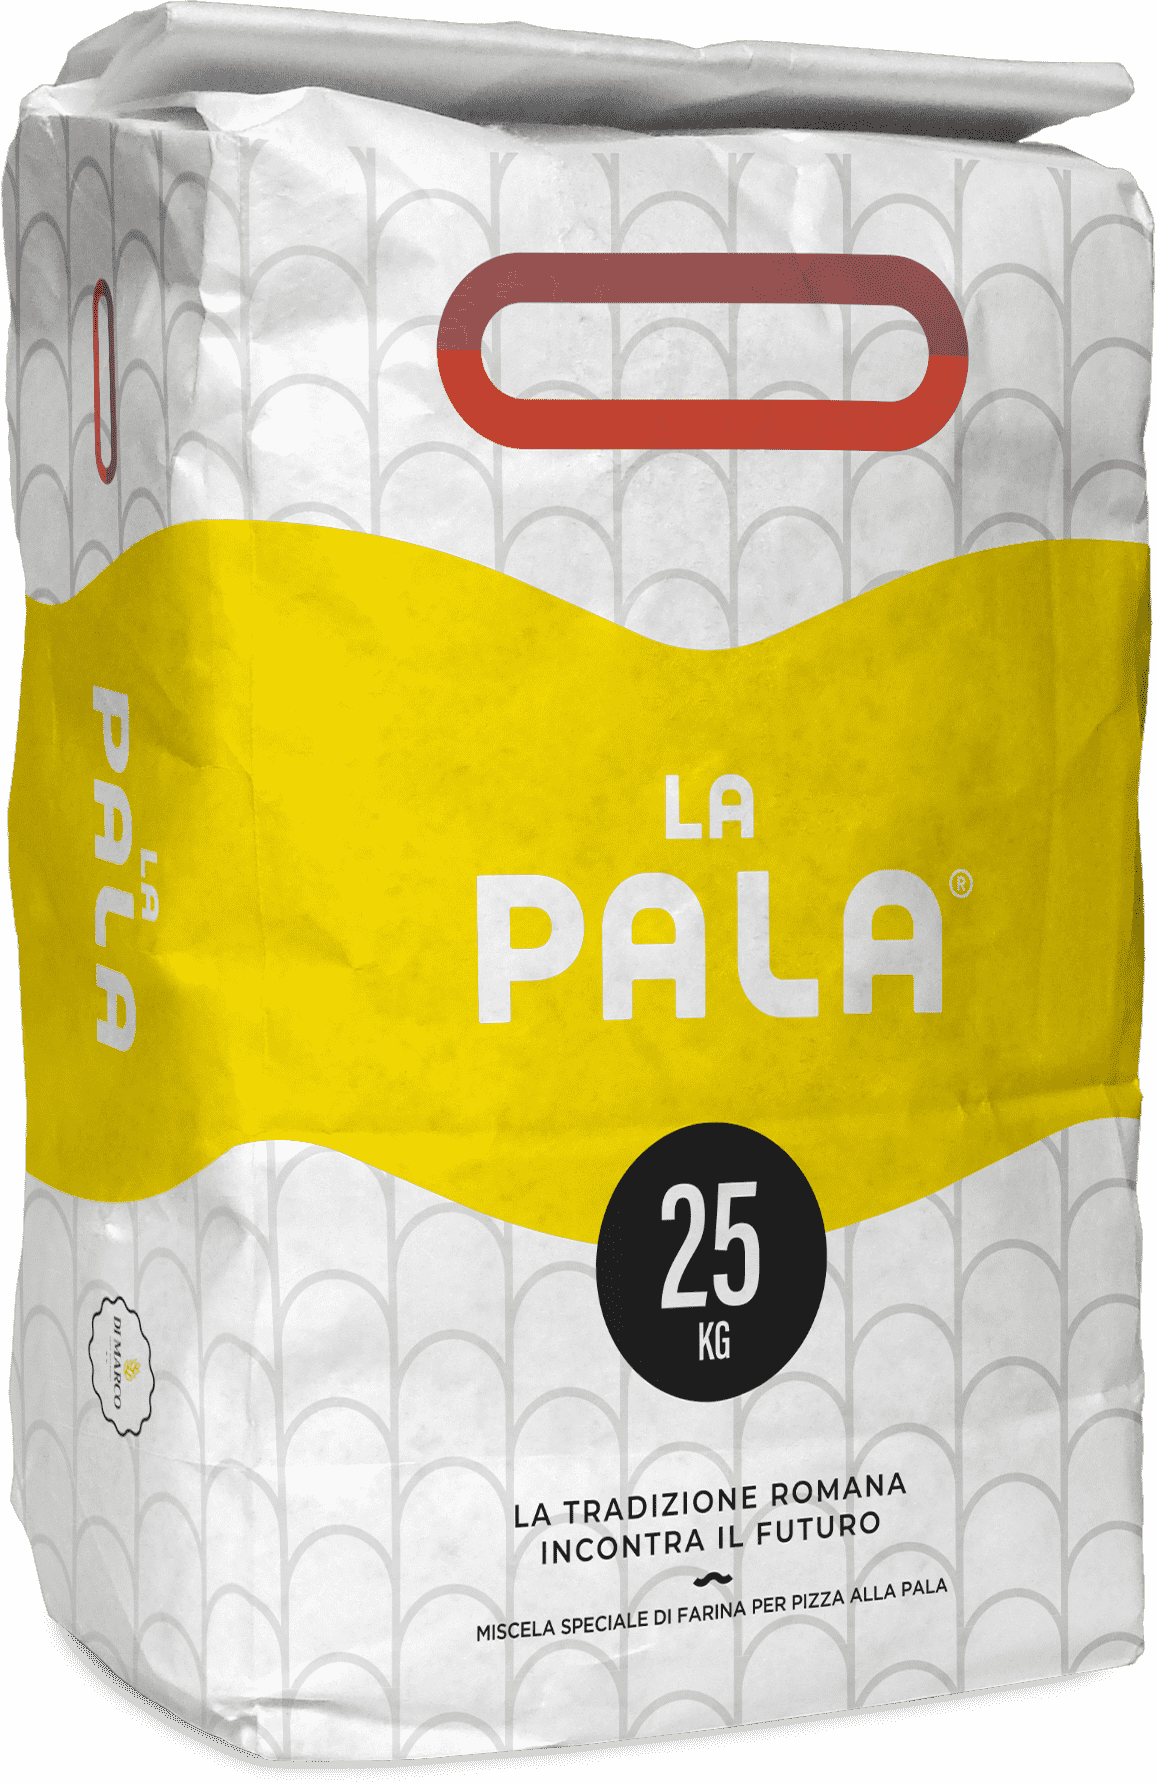 Sack of flour La Pala (Board)